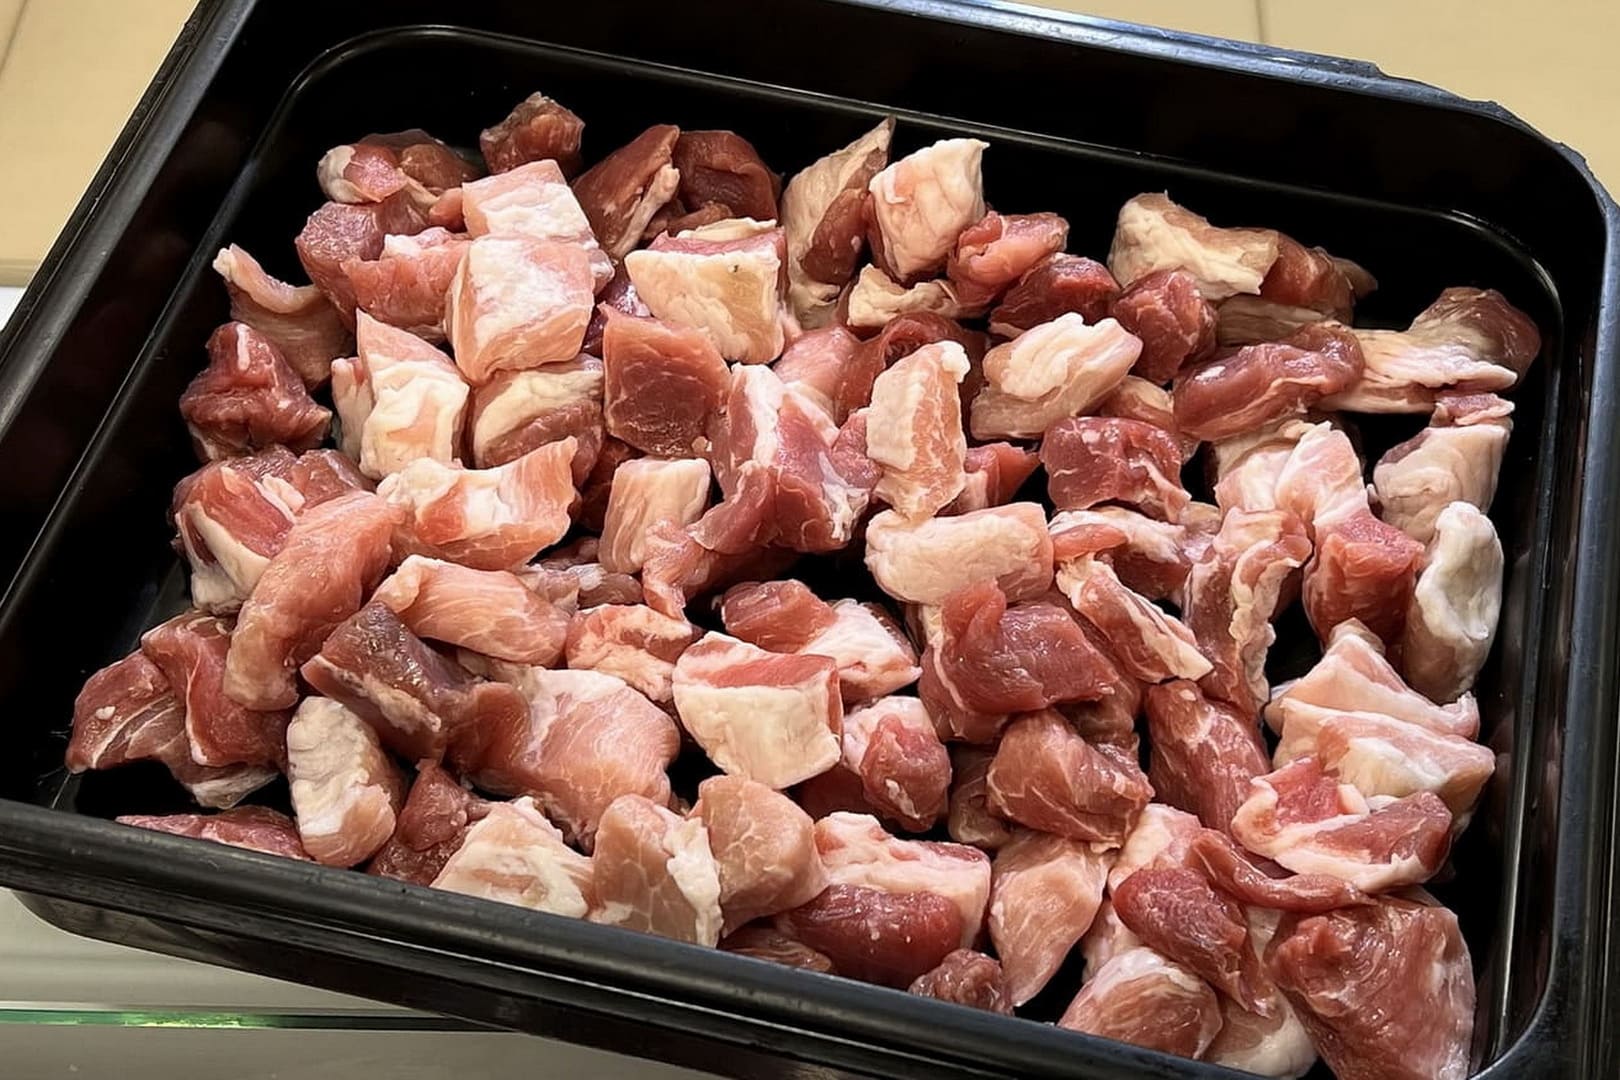 Поджарка из свинины в интернет-магазине, купите свежее мясо с доставкой в Иркутске и наслаждайтесь особенный вкусом и ароматом мясных блюд! - Фото 5